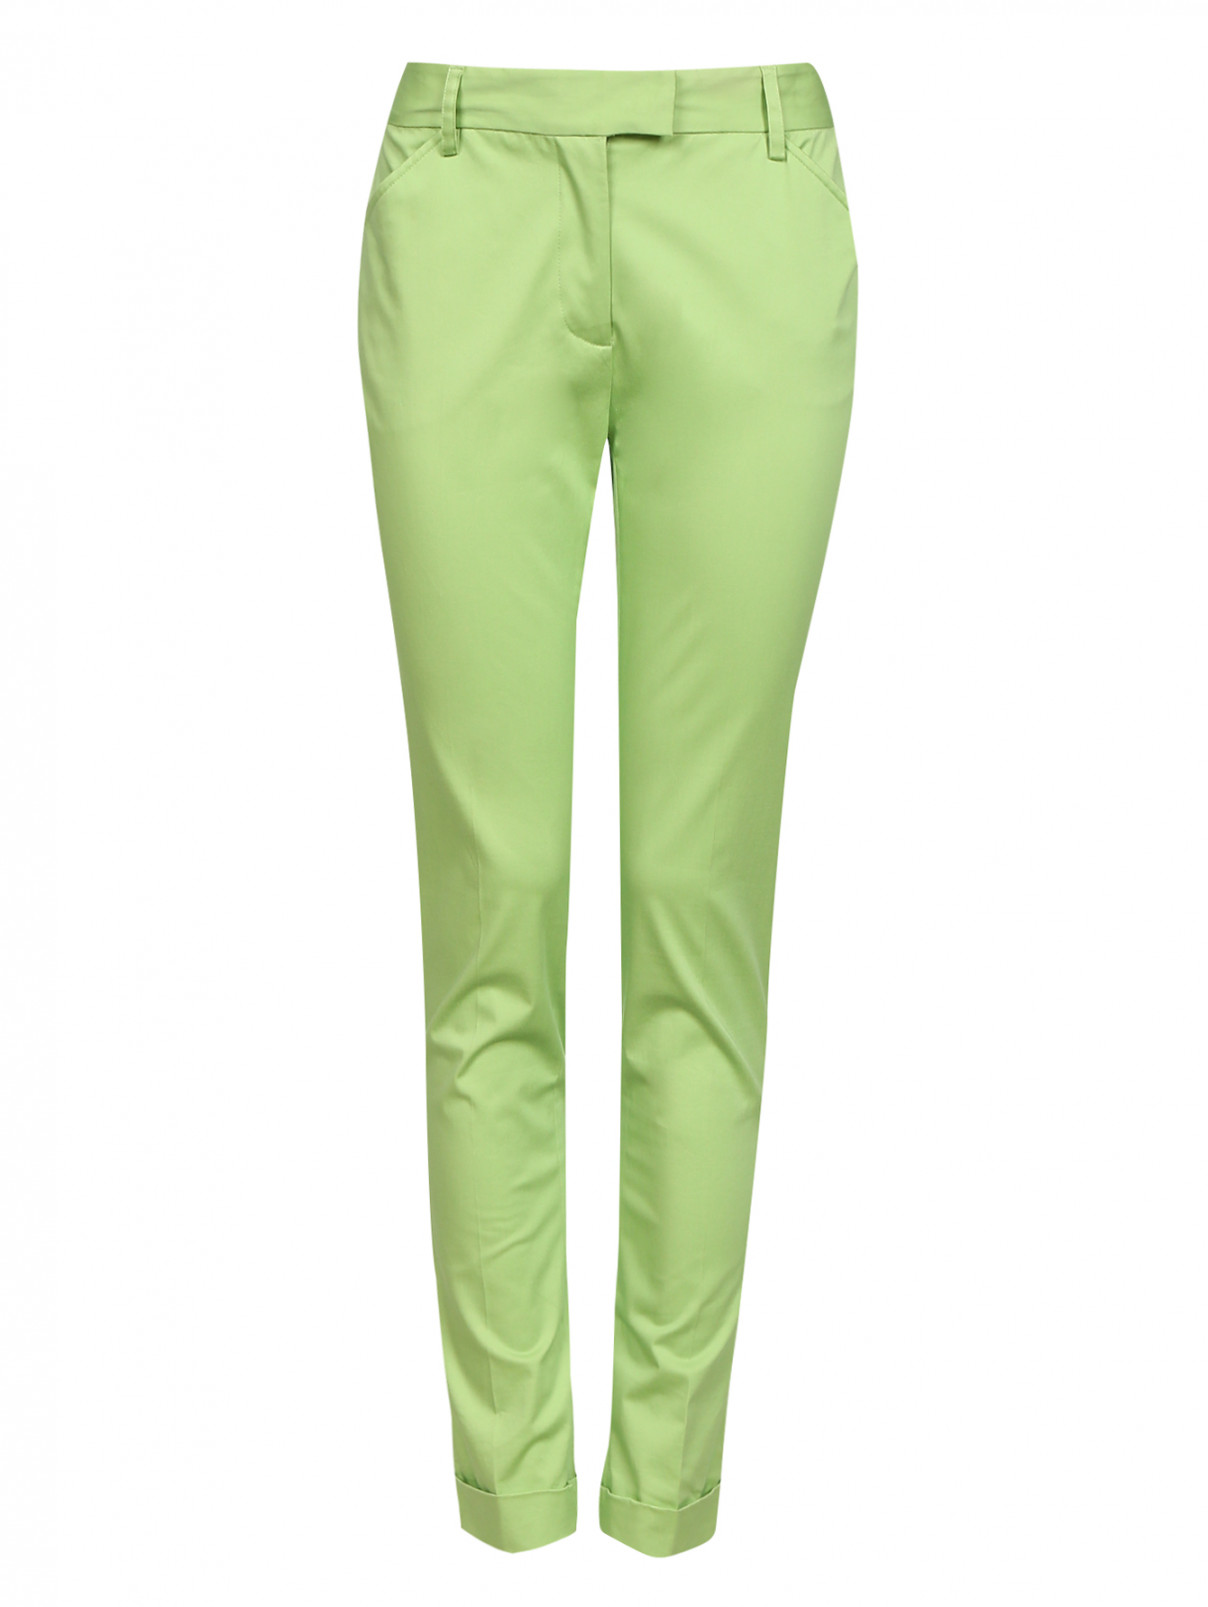 Ярко зеленые брюки женские